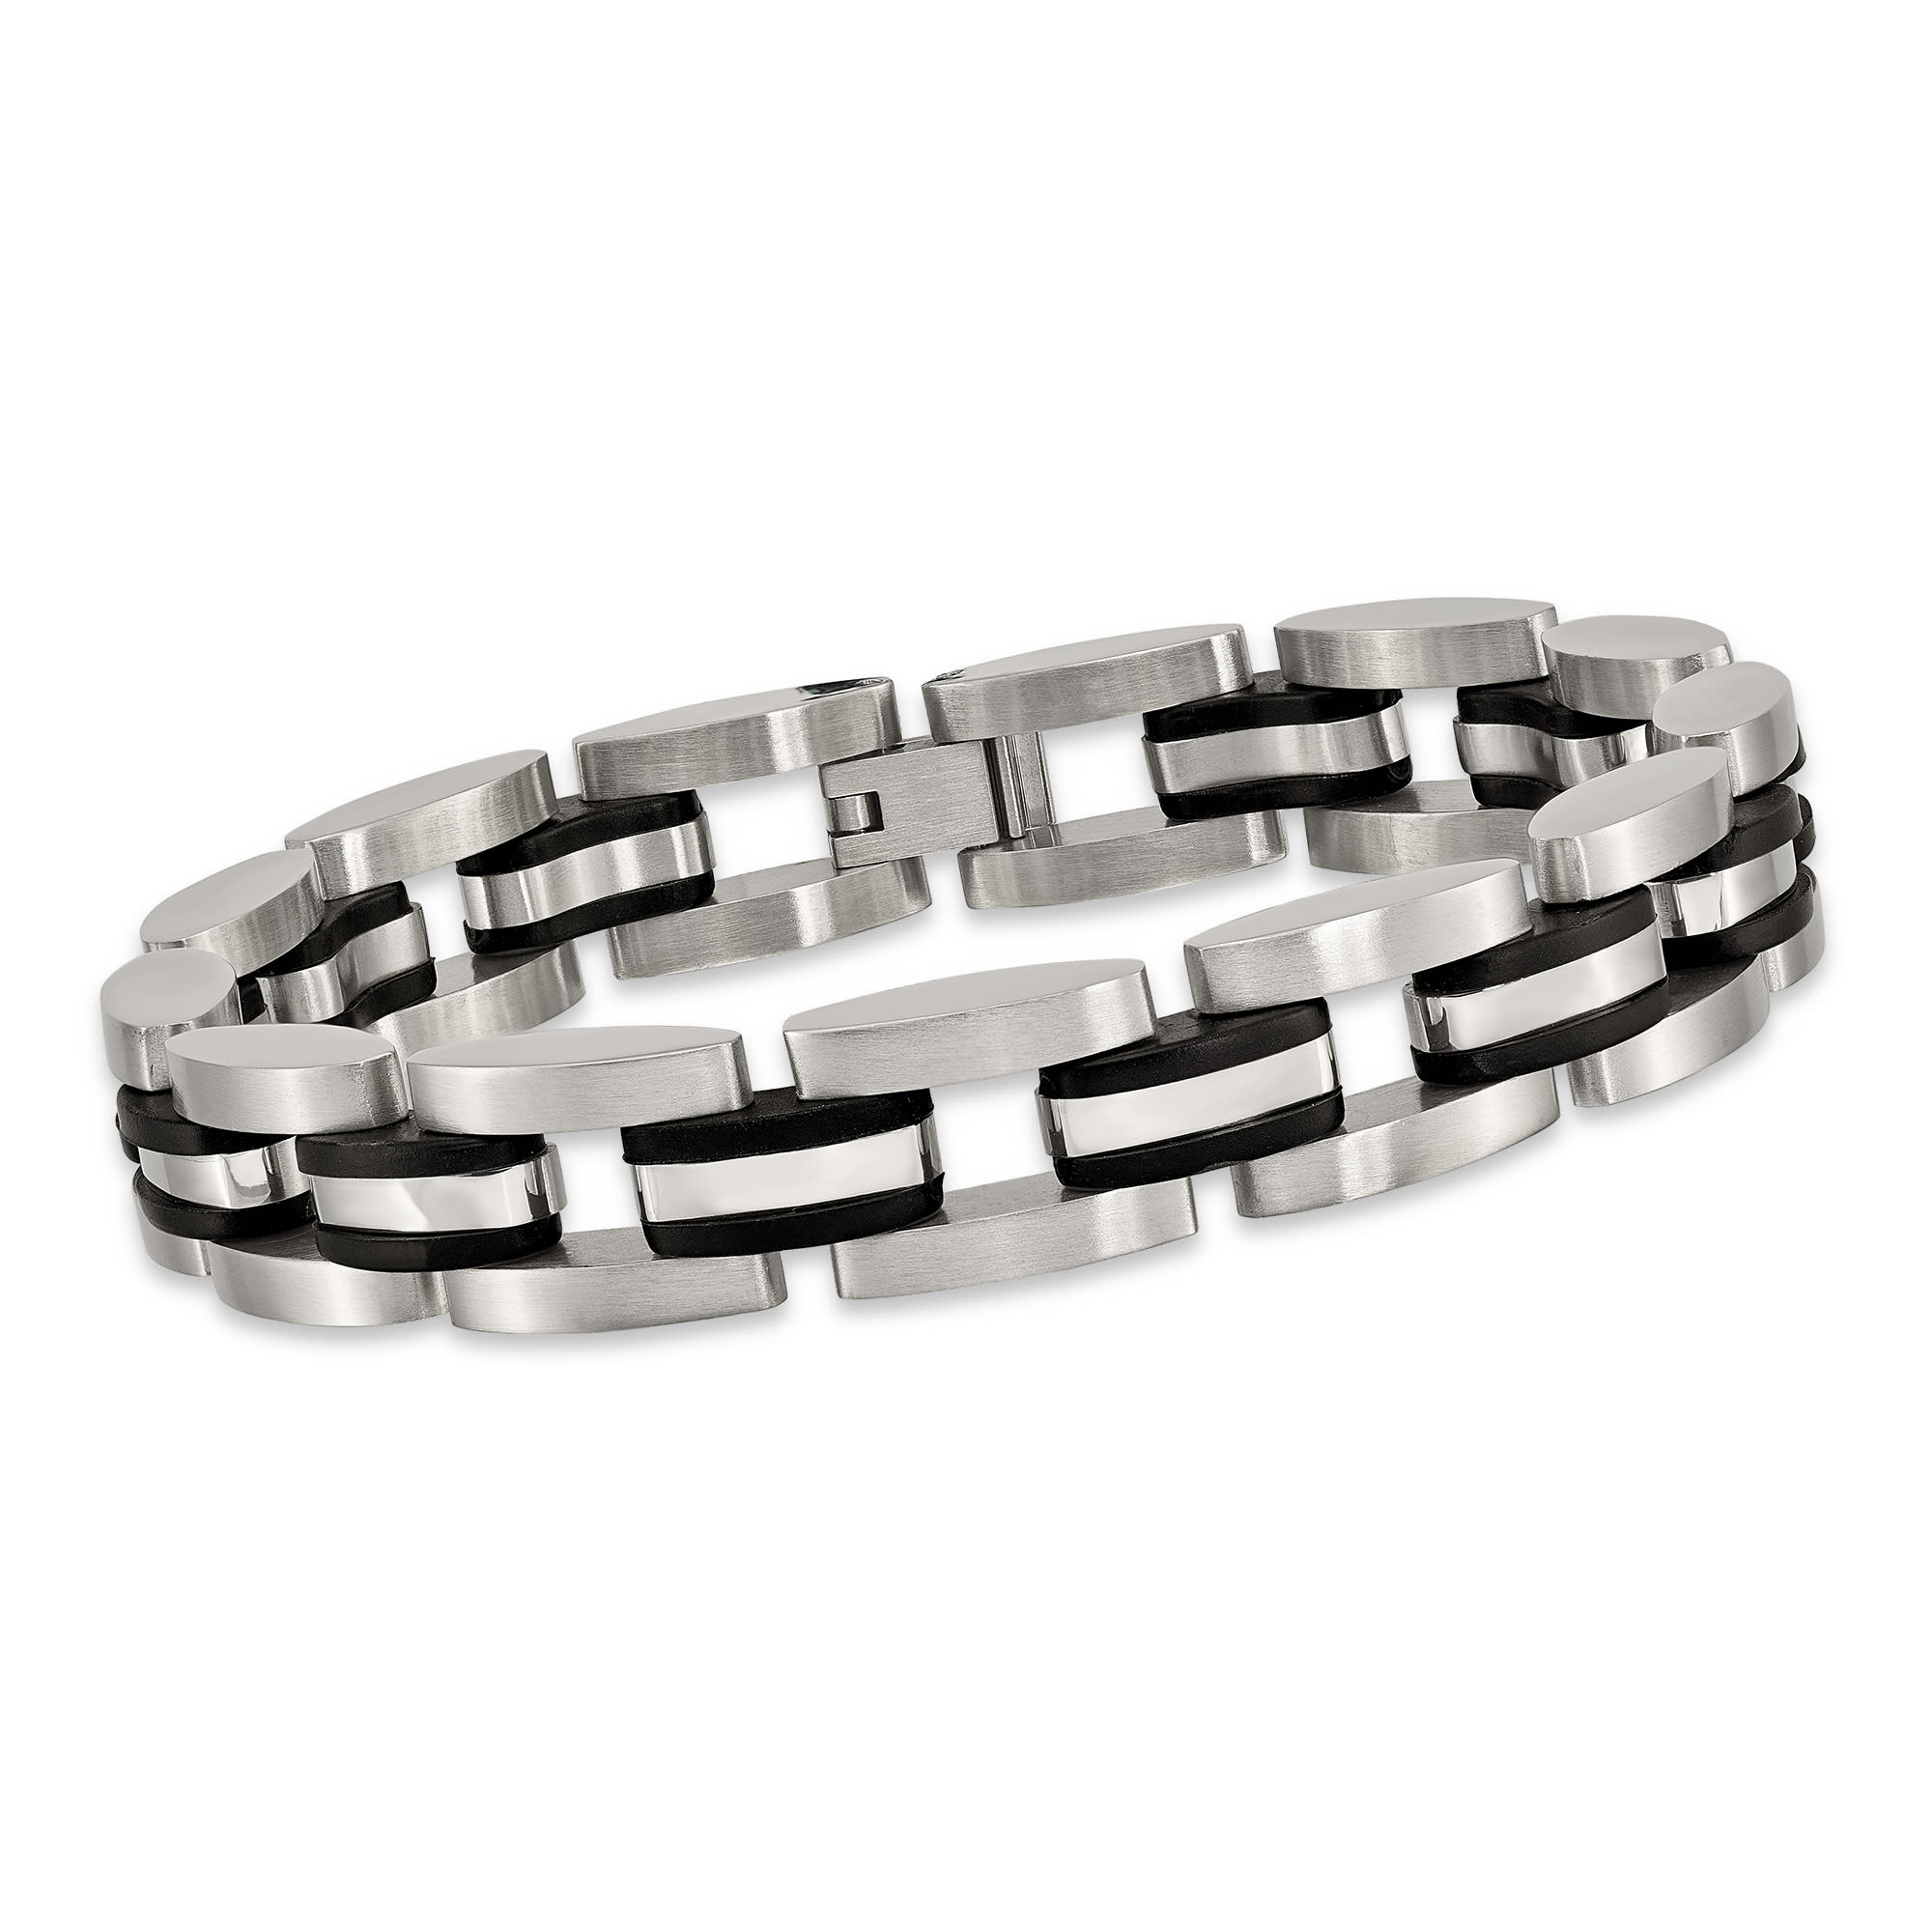 Men's Stainless Steel Link Bracelet with Black Rubber | Ross-Simons